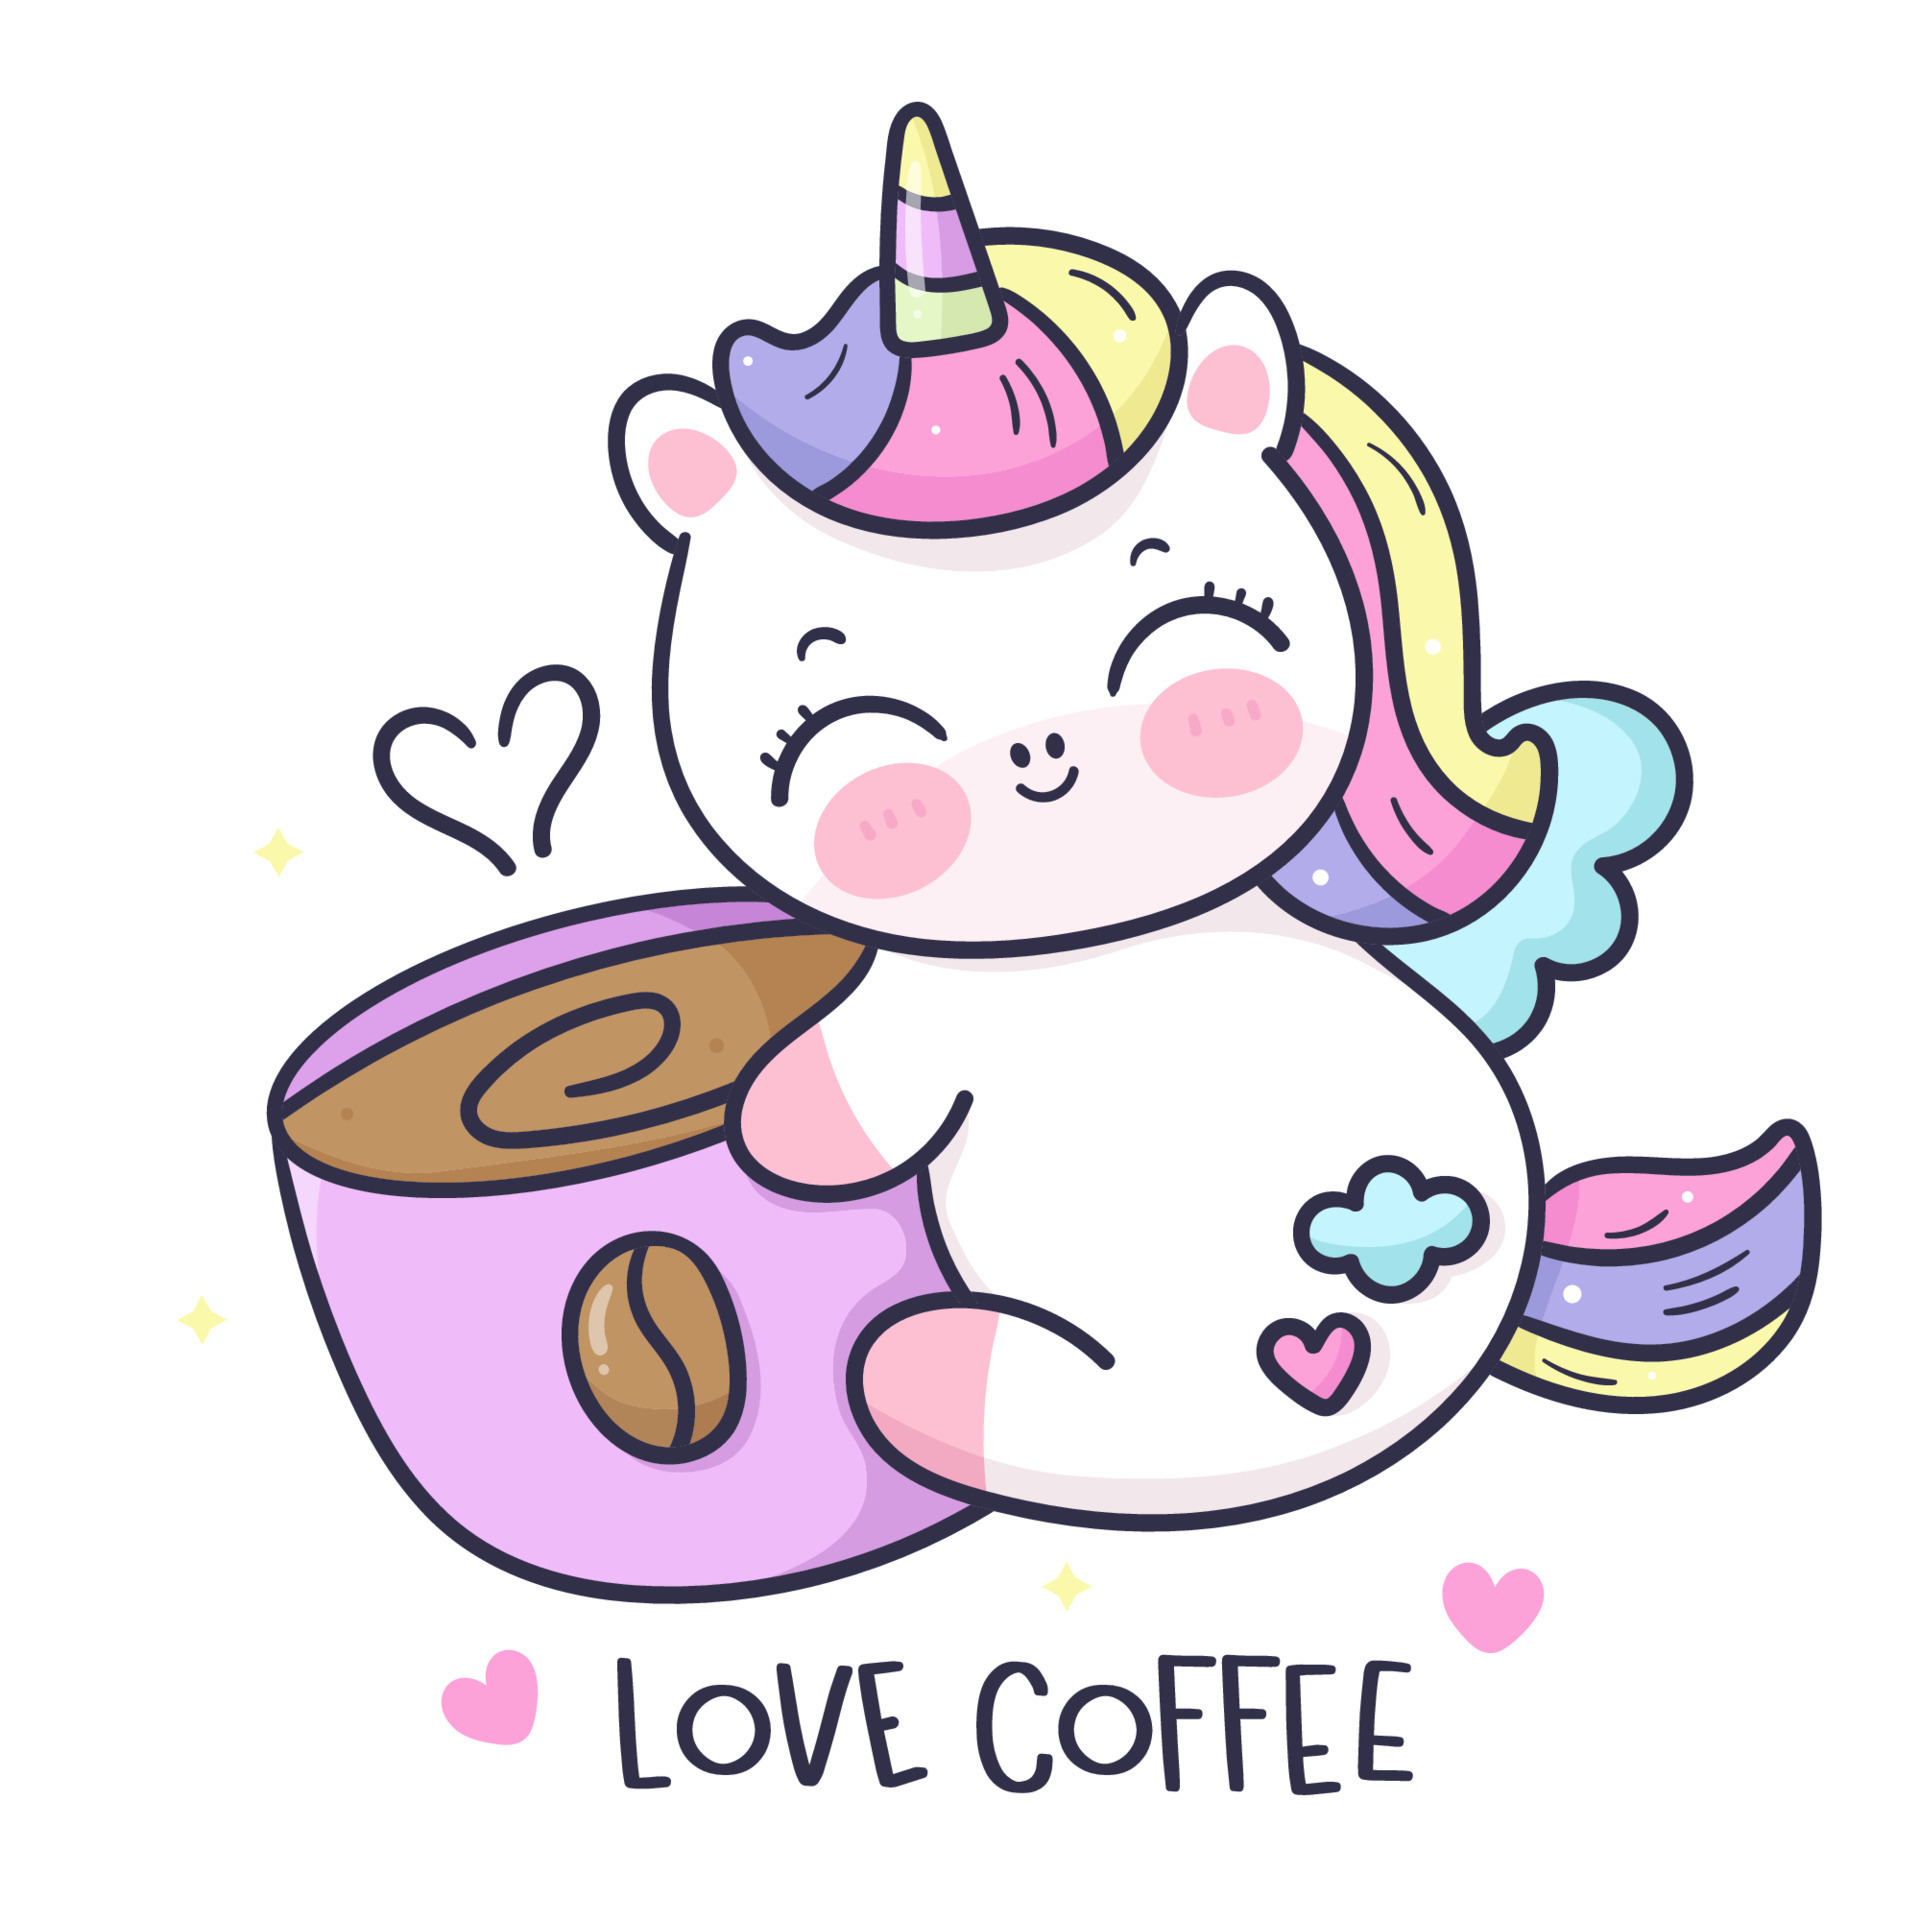 Cute Unicorn Hug Coffee Cup Kawaii Cartoon 11786308 Vector Art At Vecteezy